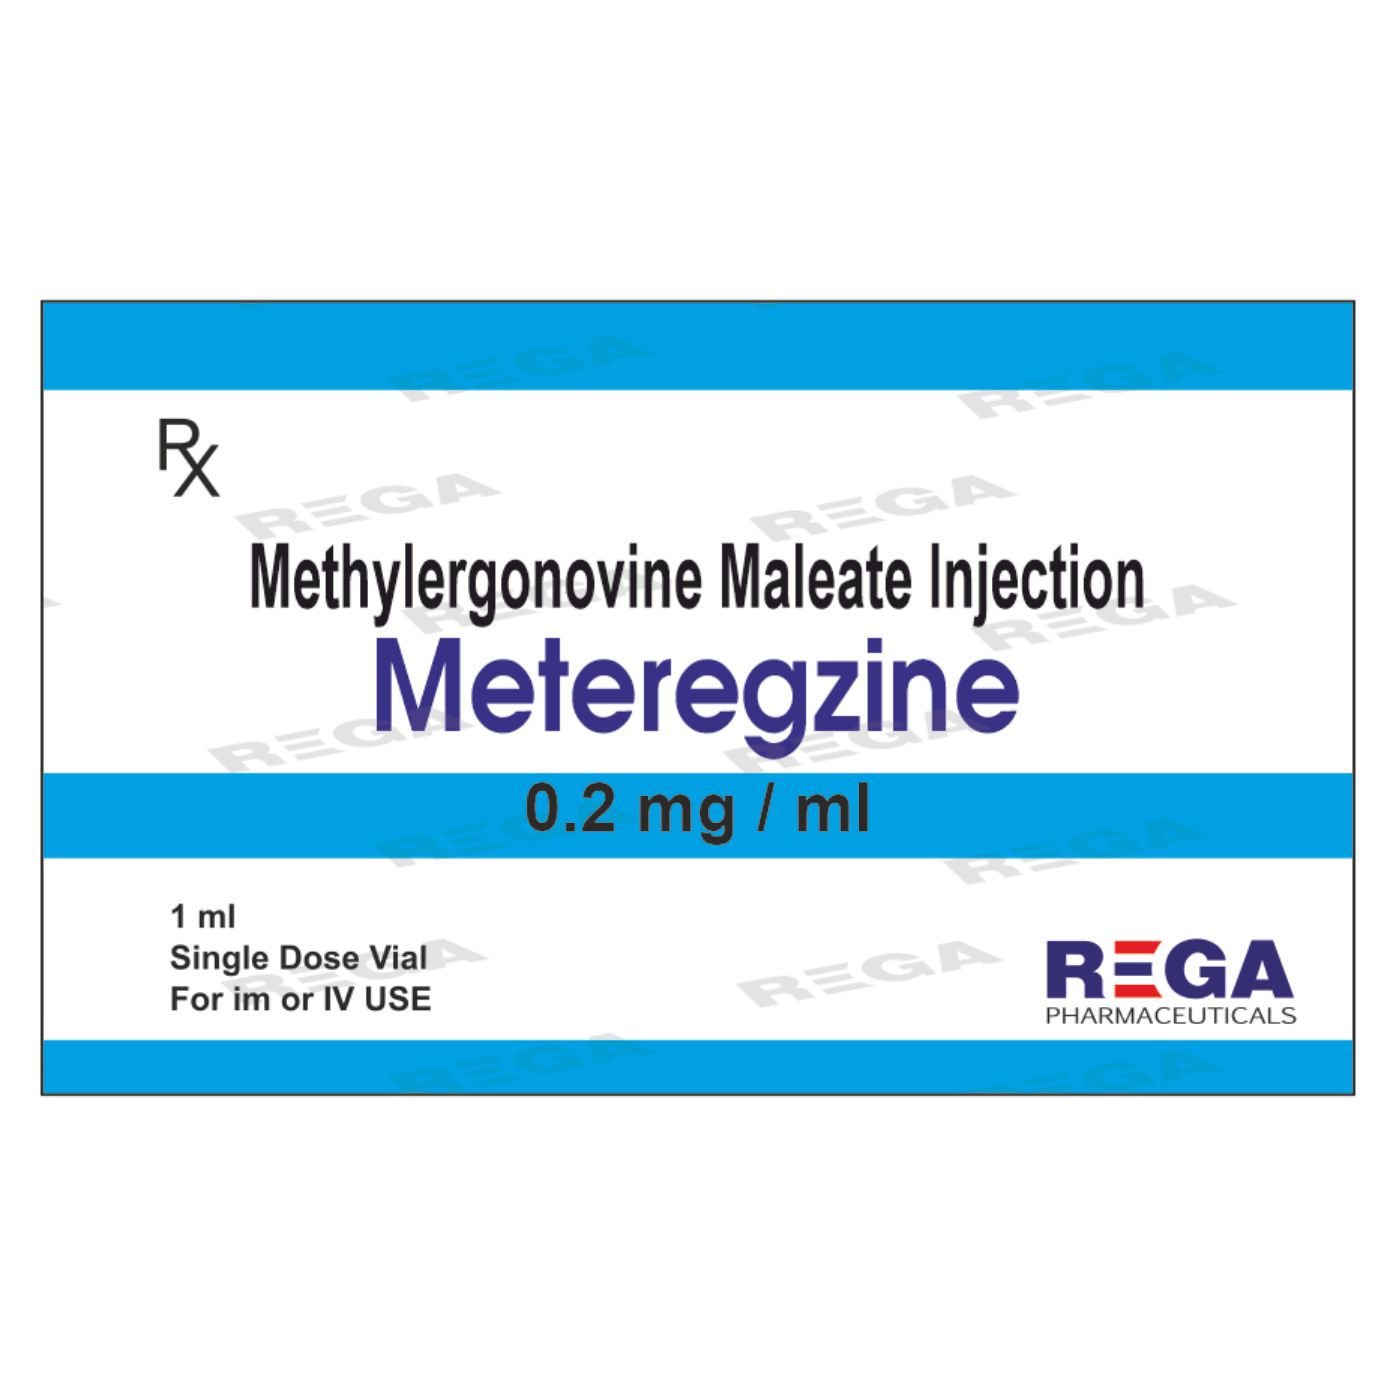 Methylergonovine Maleate Inj. 200 mcg/ml